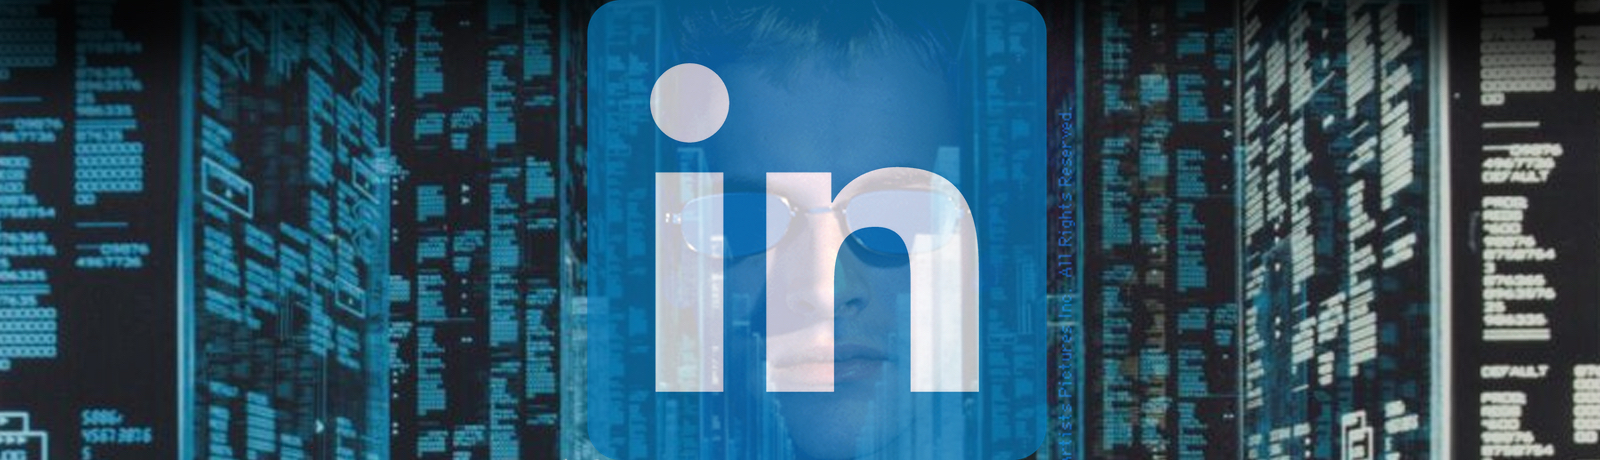 500 miljoner LinkedIn-profiler på vift Säljs just nu via hackerforum